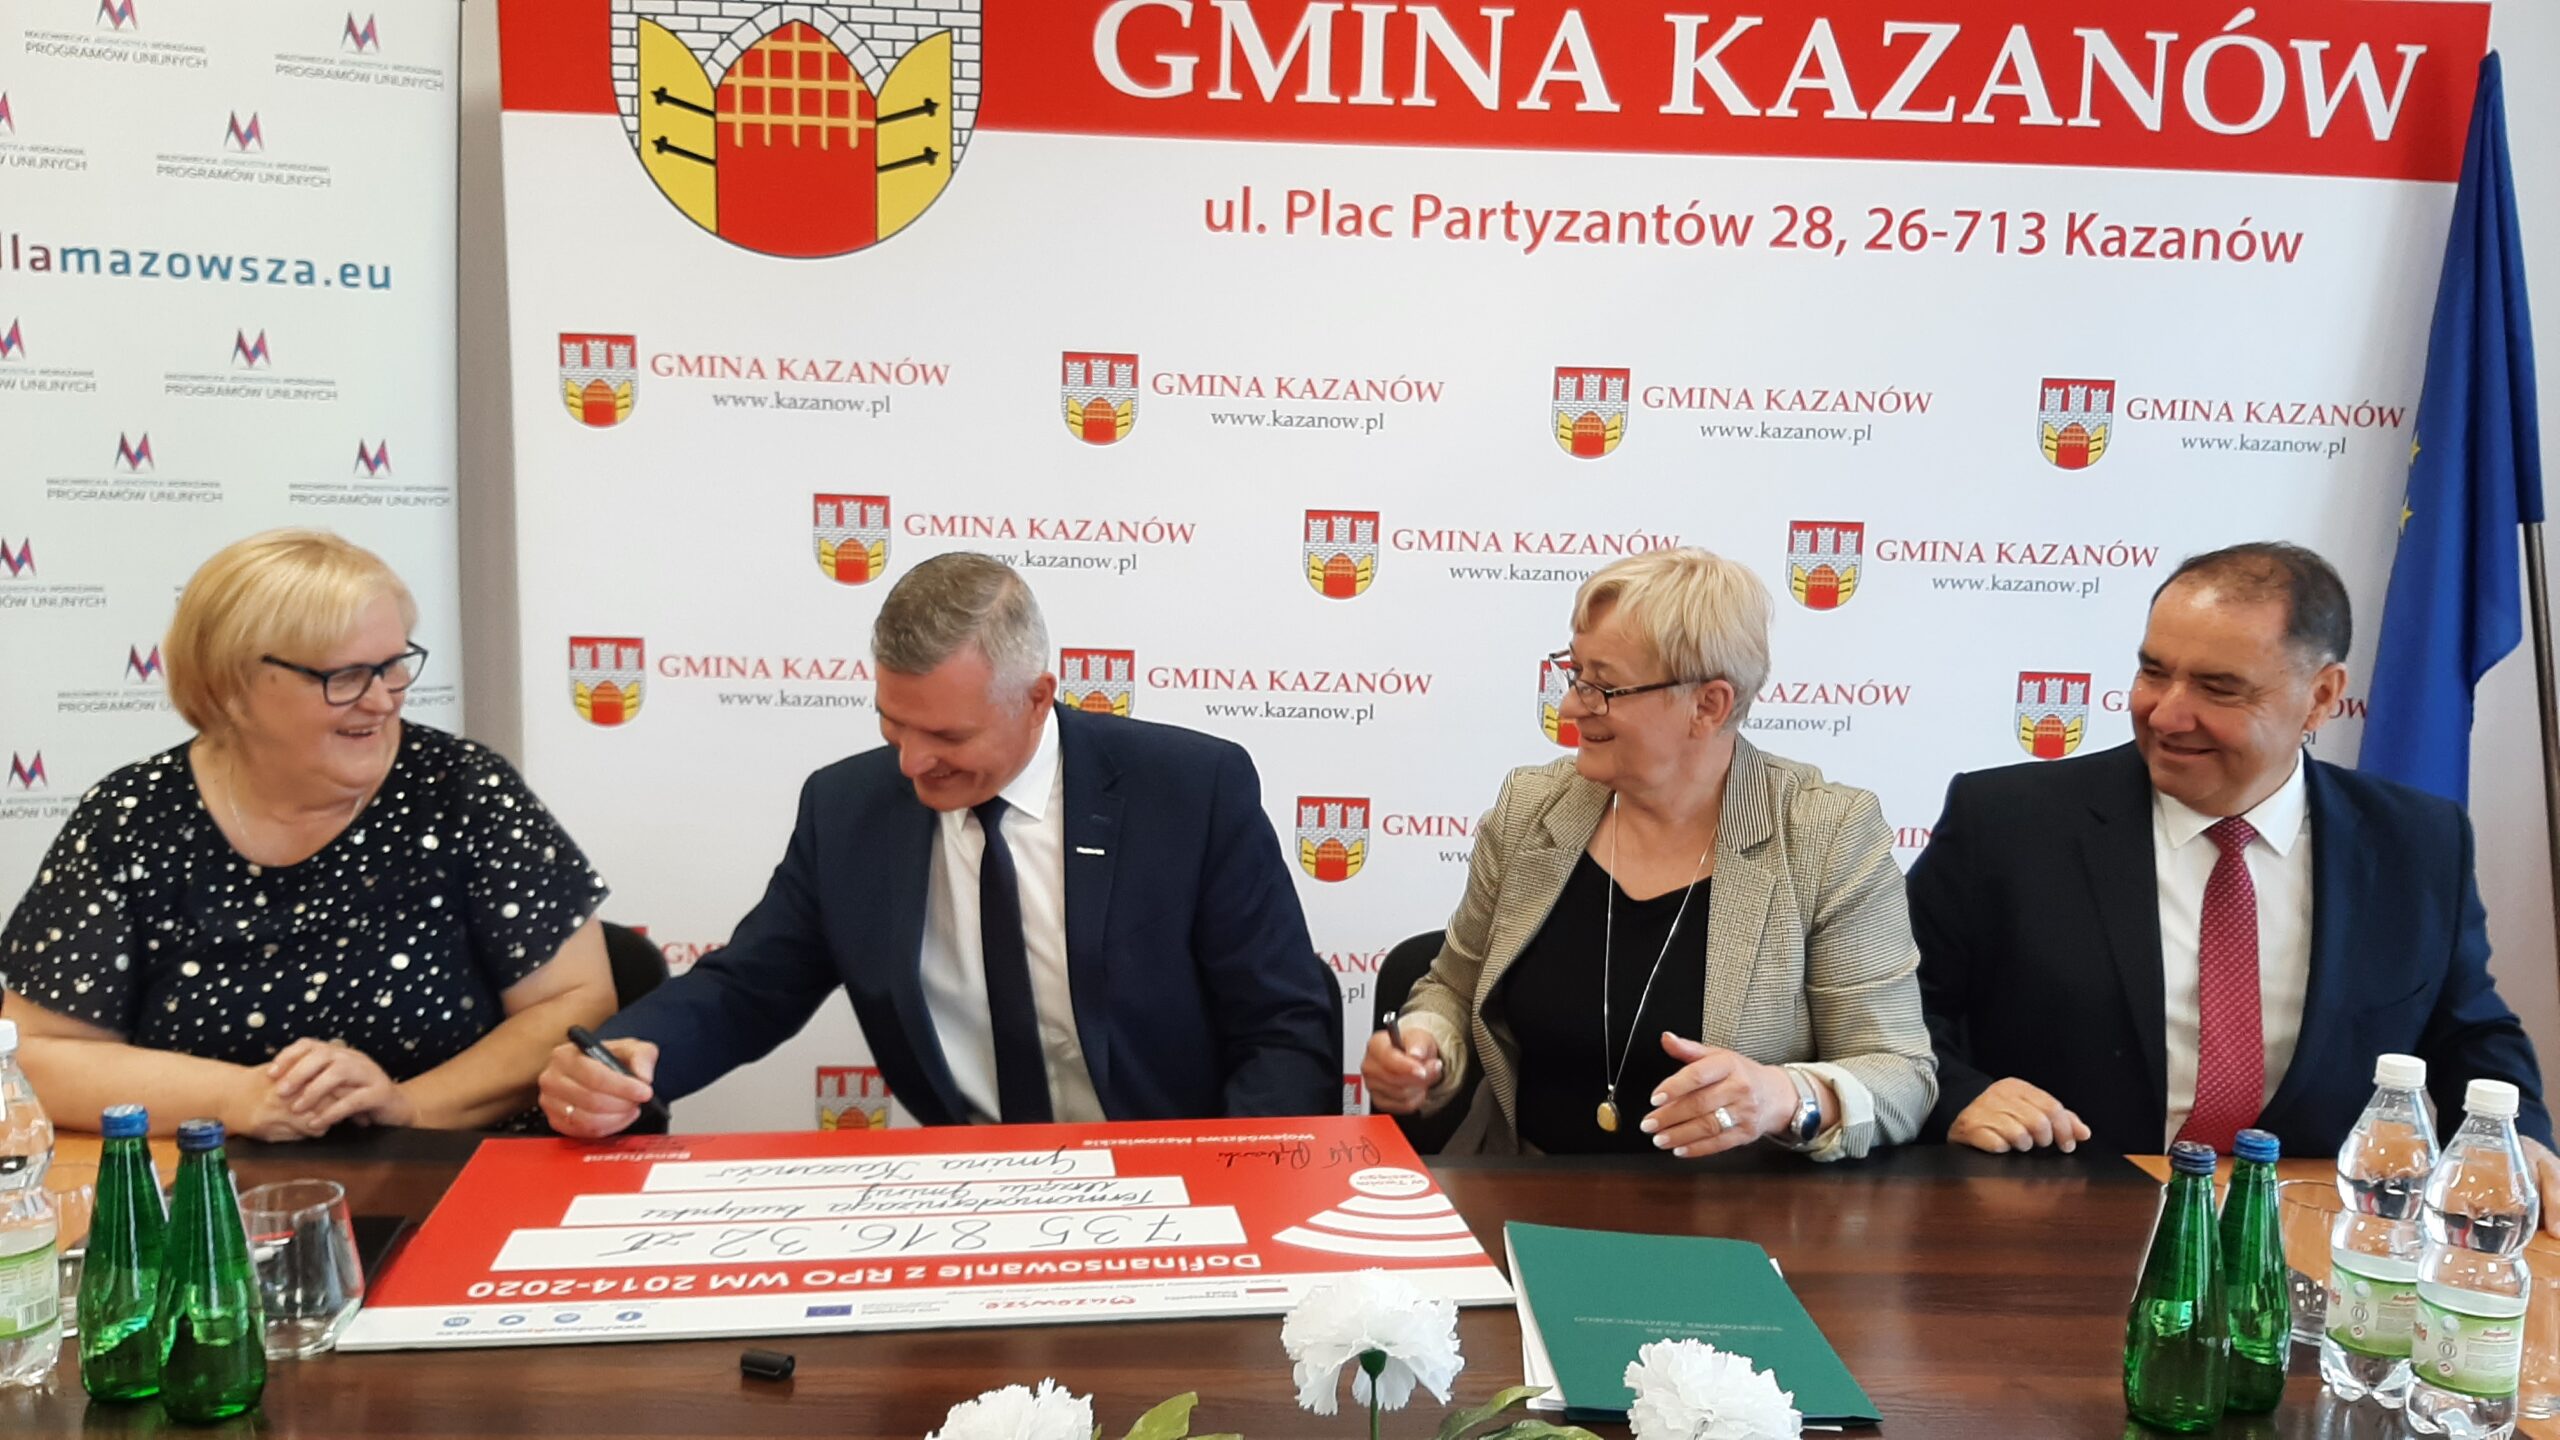 Podpisanie pamiątkowego czeku dla gminy Kazanów